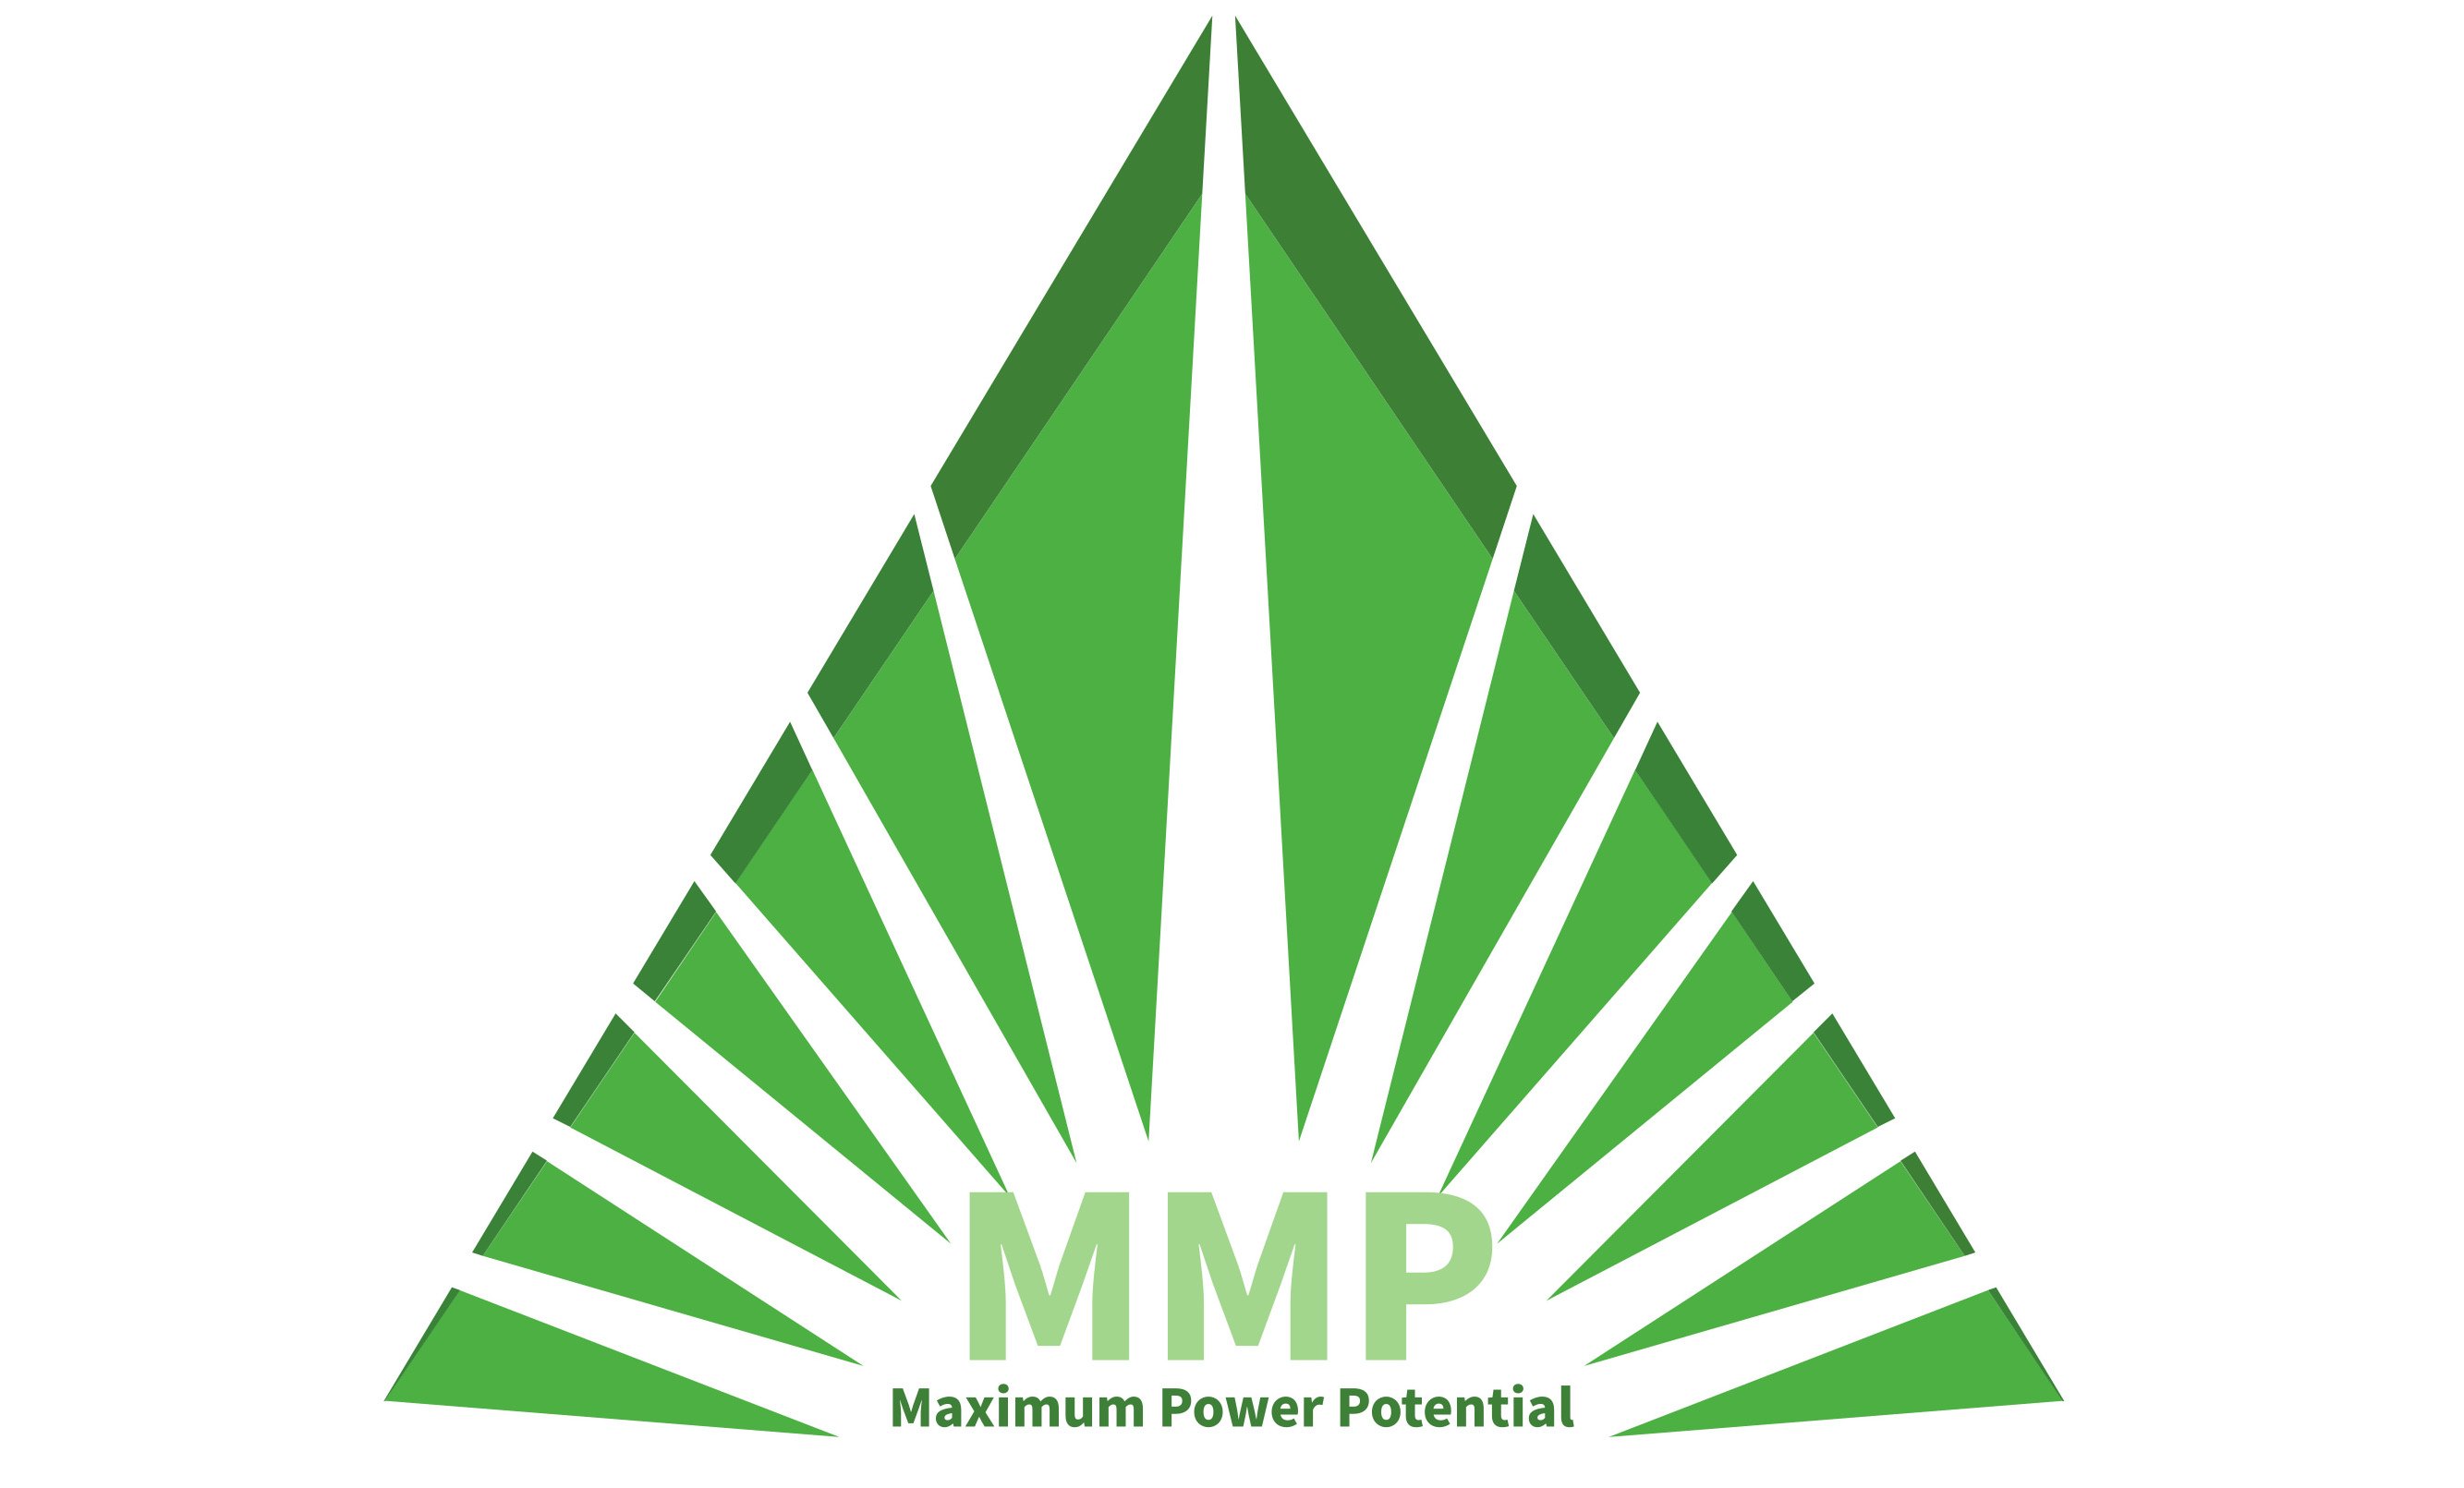  MMP MAXIMUM POWER POTENTIAL